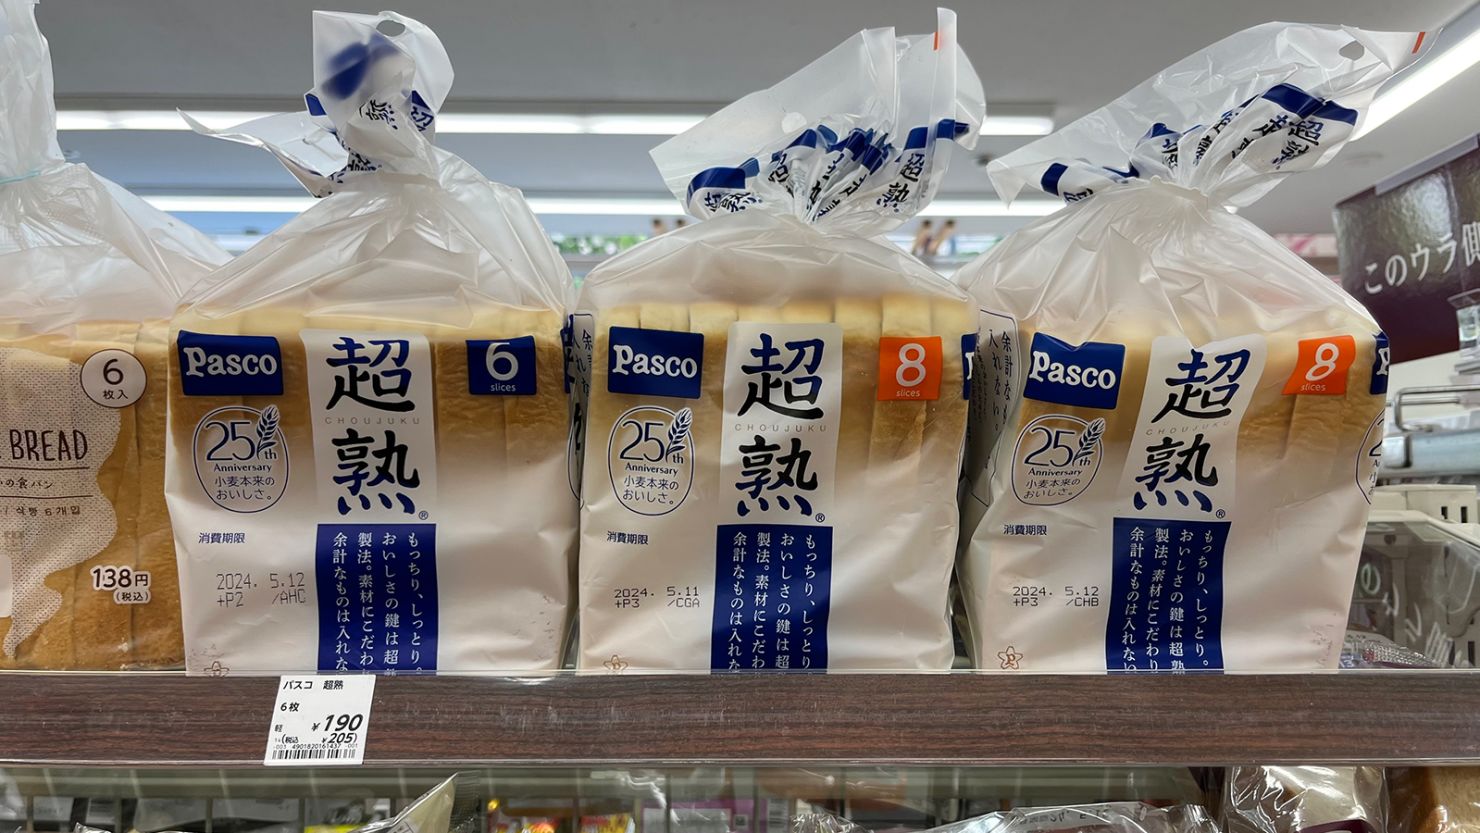 Pasco’s white “chojuku” bread sold at a Lawson convenience store in Akasaka, Tokyo.